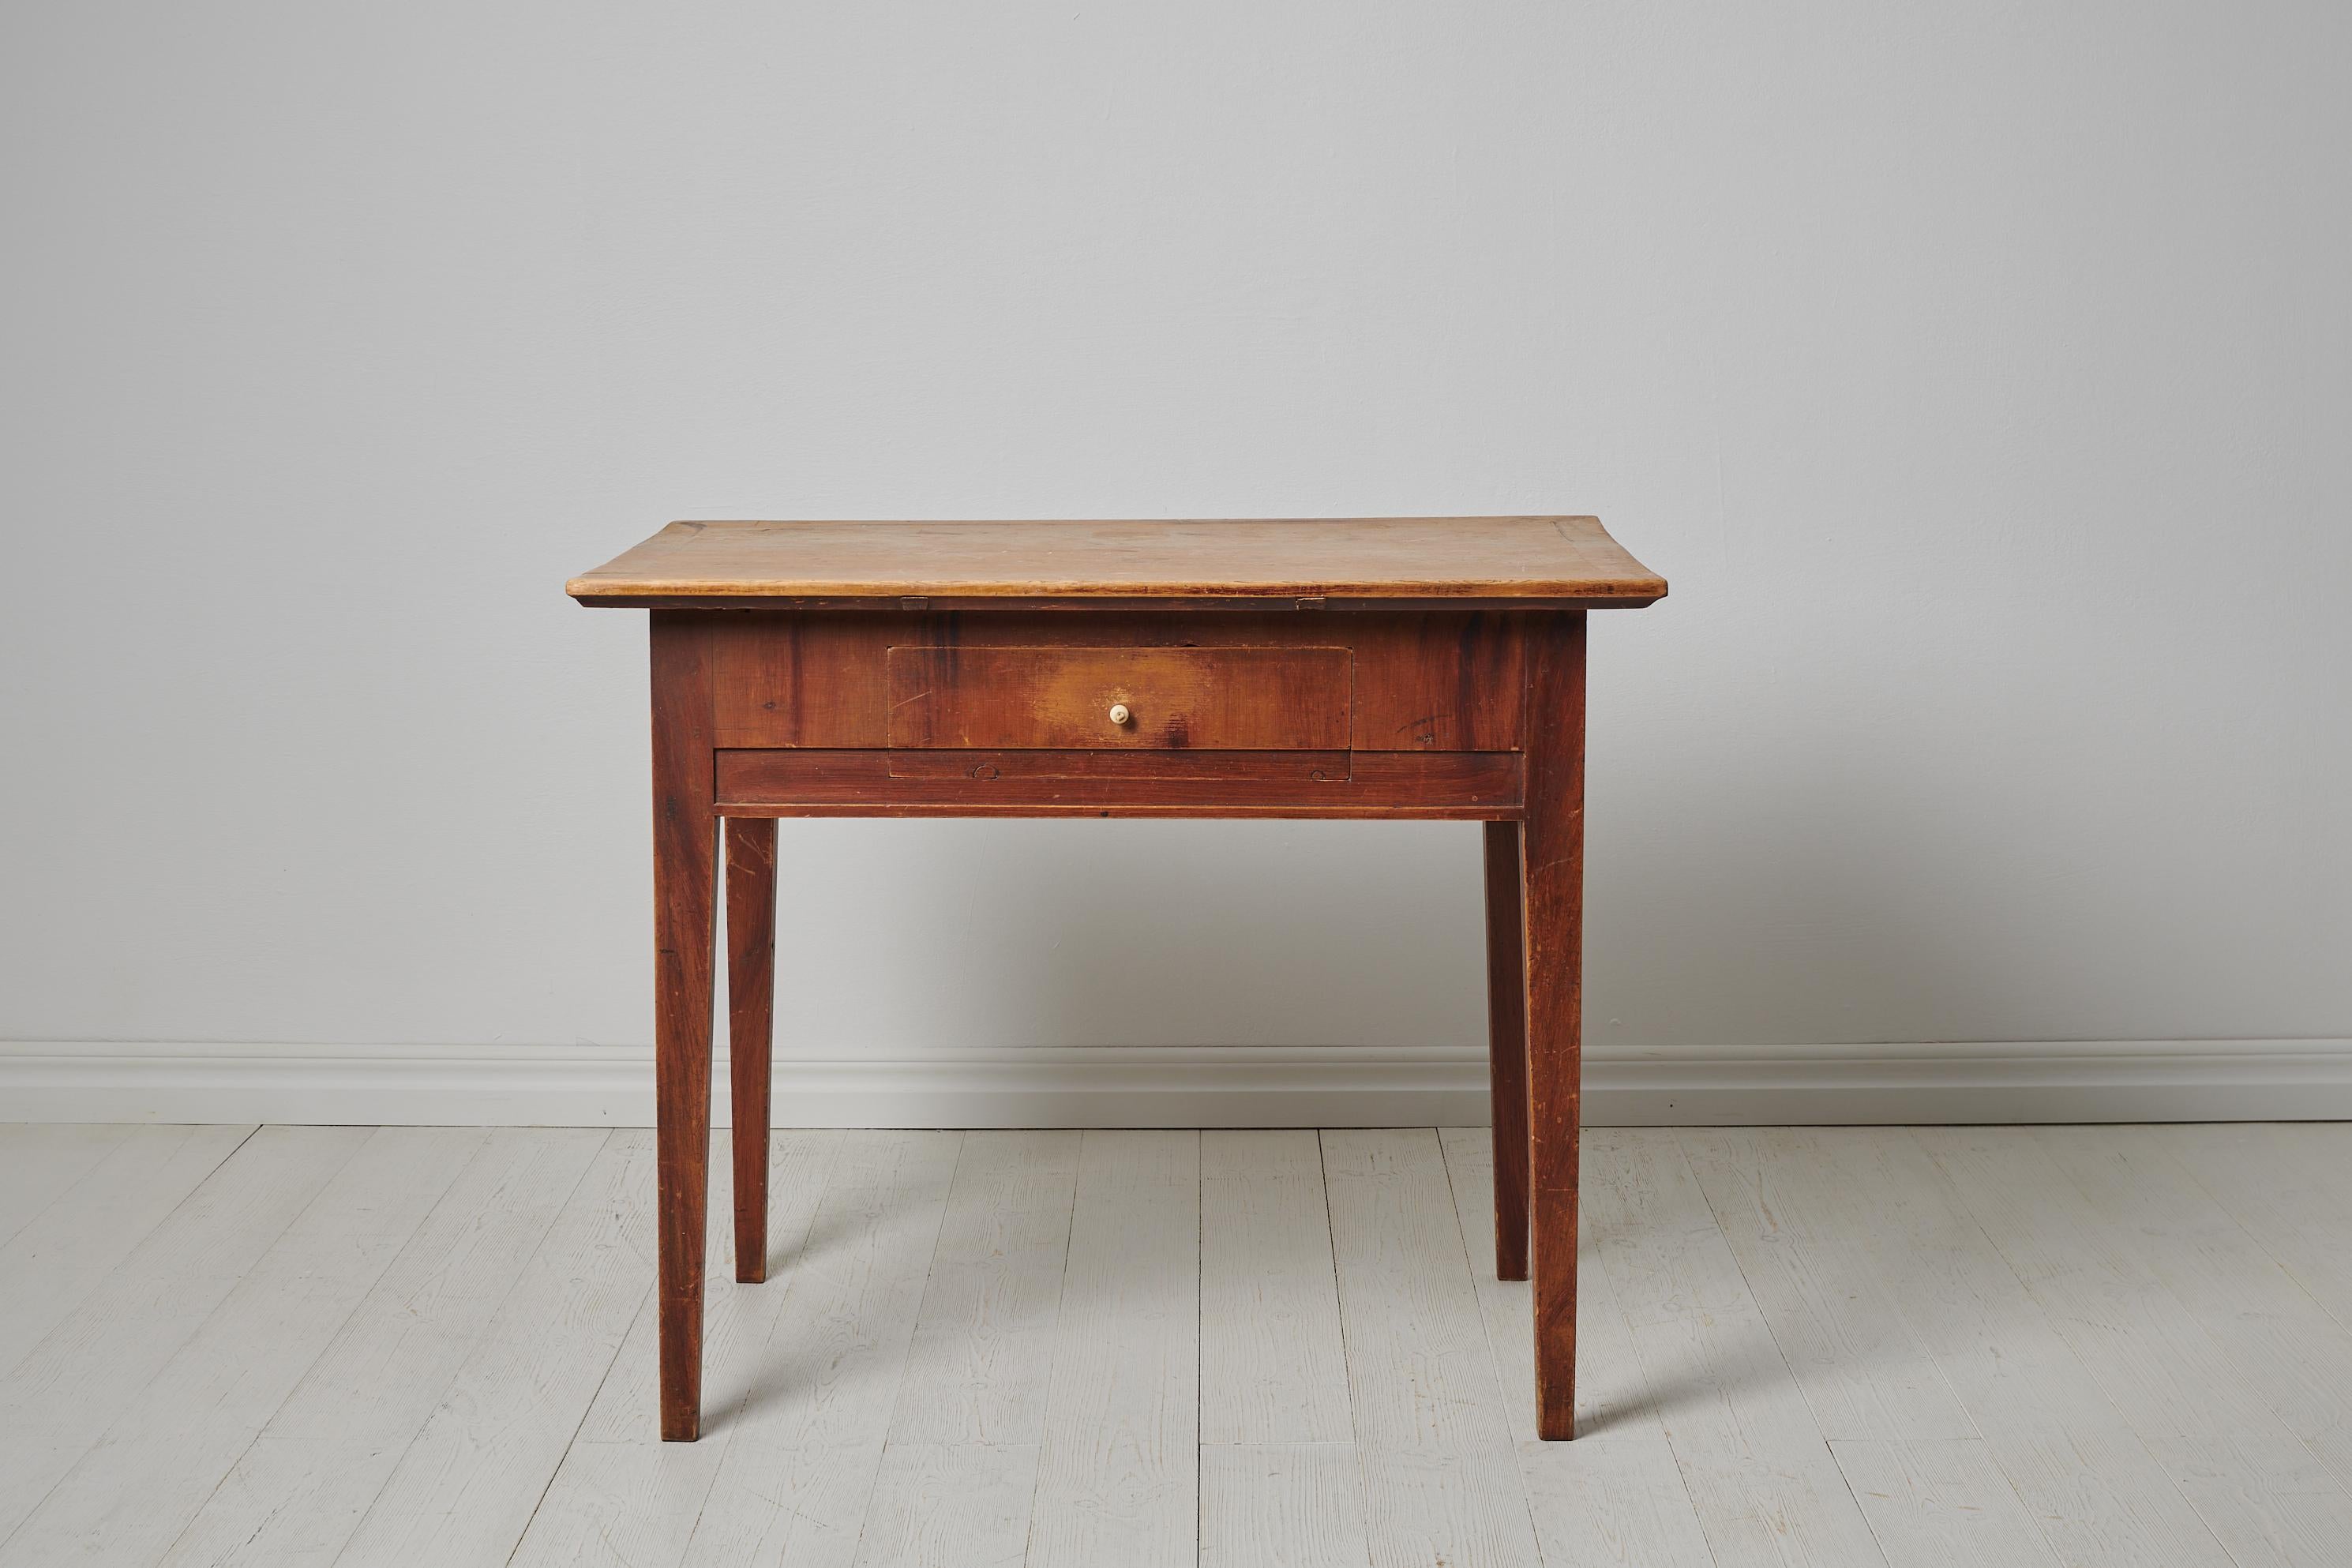 Table de campagne d'art populaire du nord de la Suède, fabriquée entre 1820 et 1840 en pin. La table est une authentique antiquité suédoise en parfait état d'origine. La fausse peinture est d'origine. La table est en bon état, conforme à l'âge et à